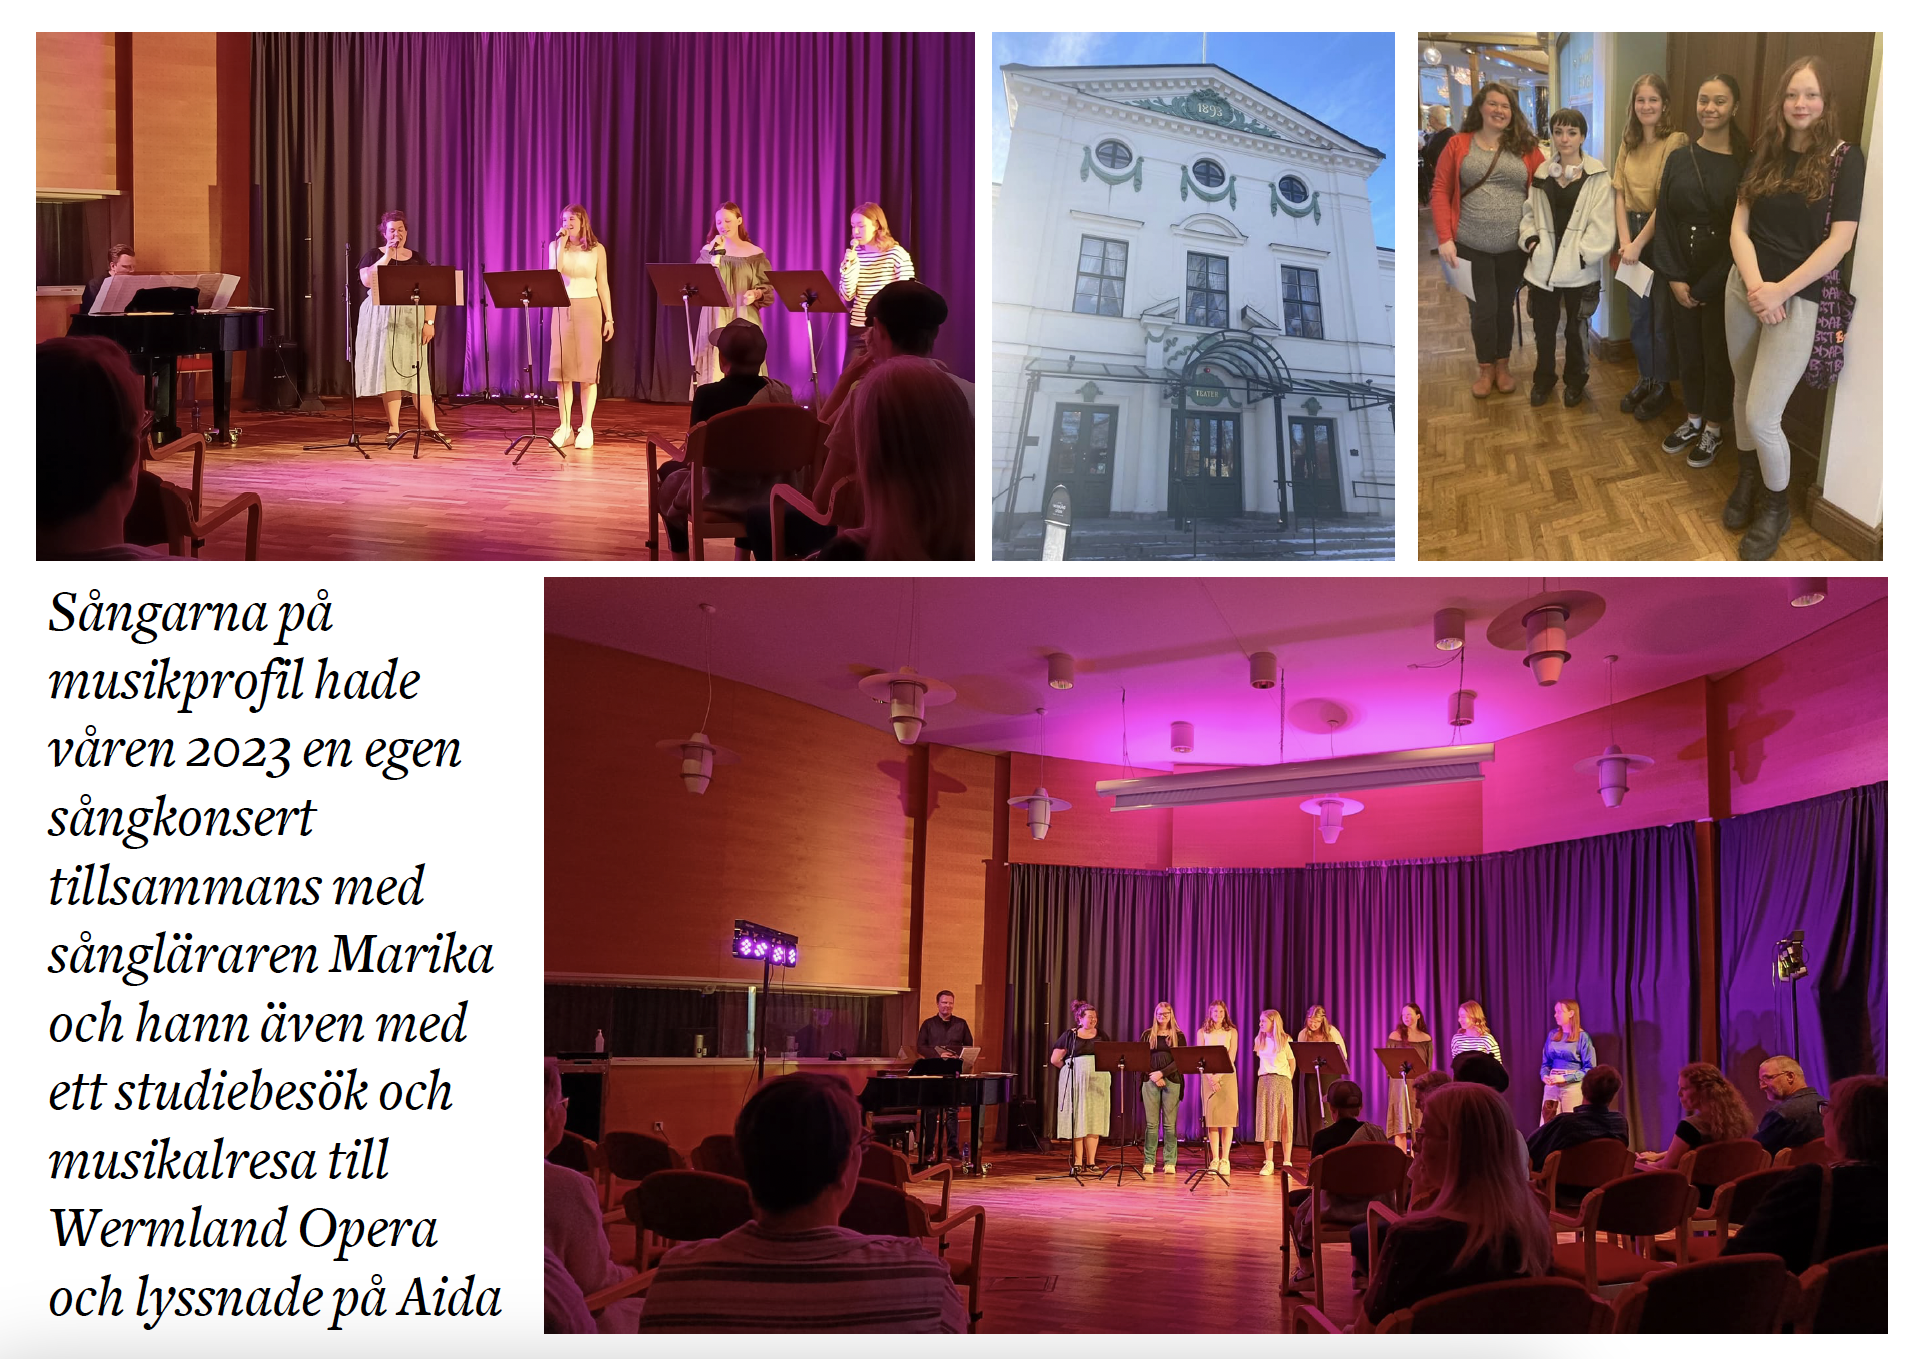 Egen sångkonsert med sångarna och studieresa till Wermland Opera och föreställningen Aida